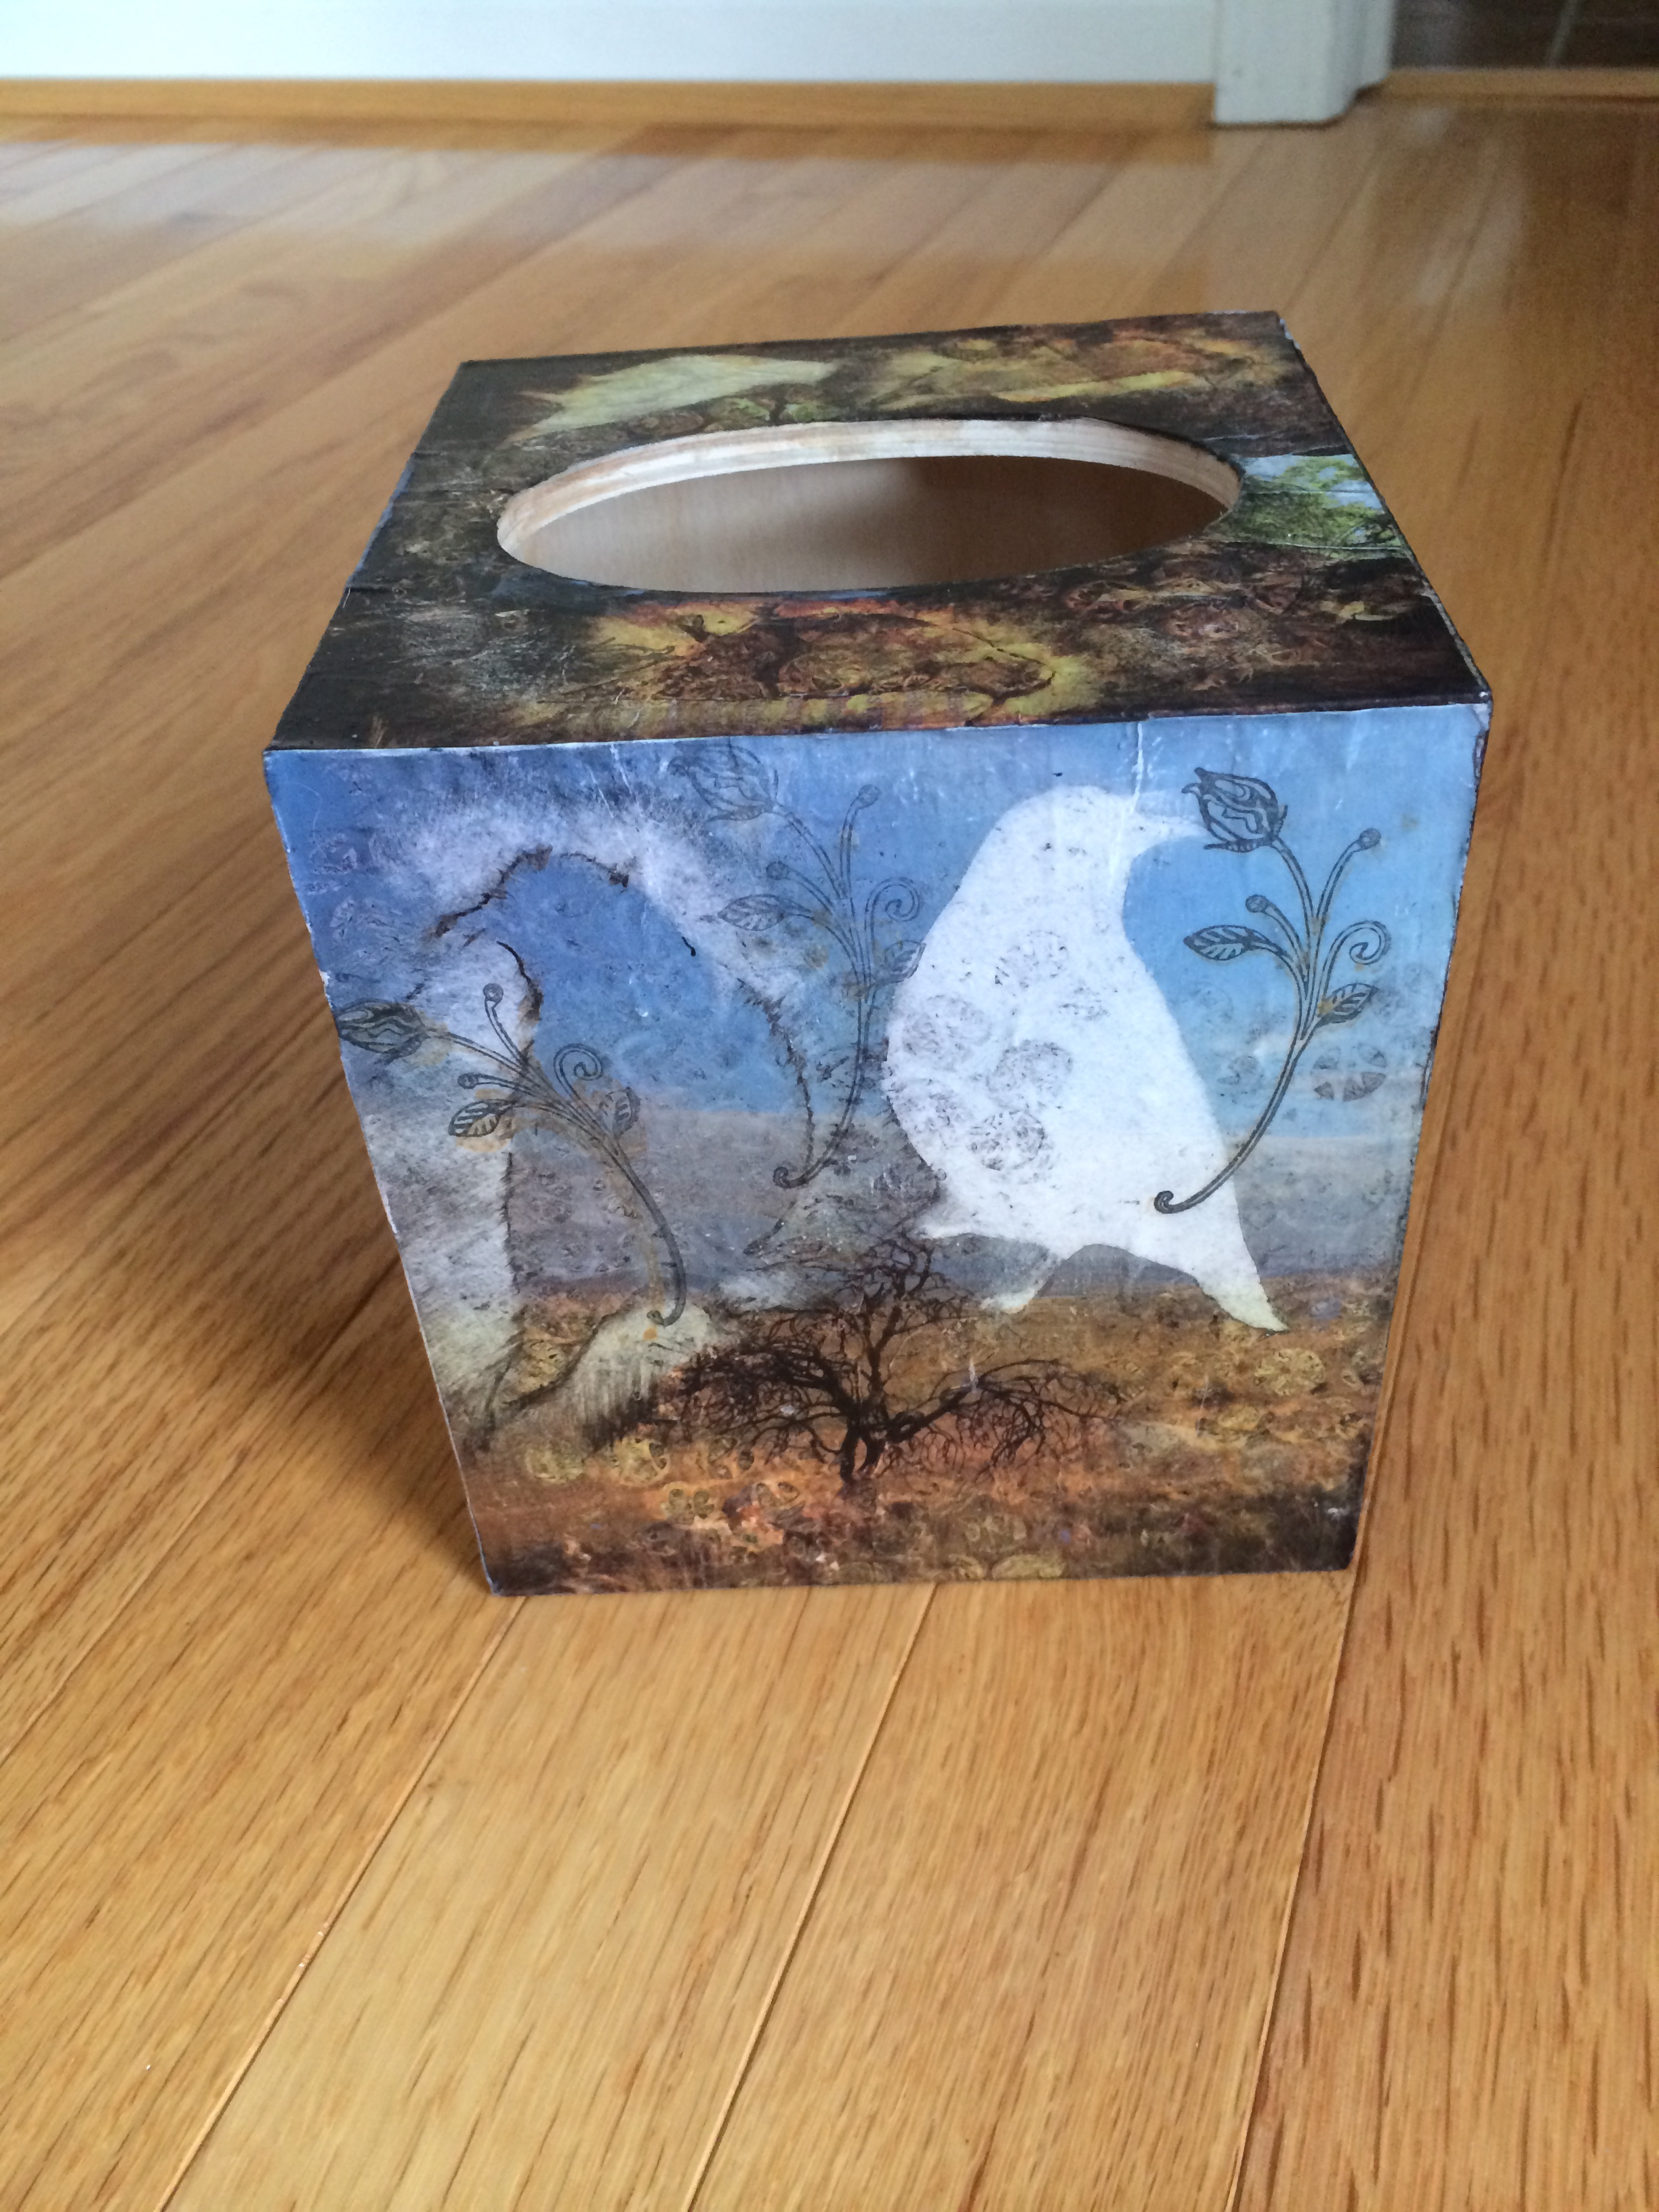  Ellen Horovitz- "Tissue Box" 